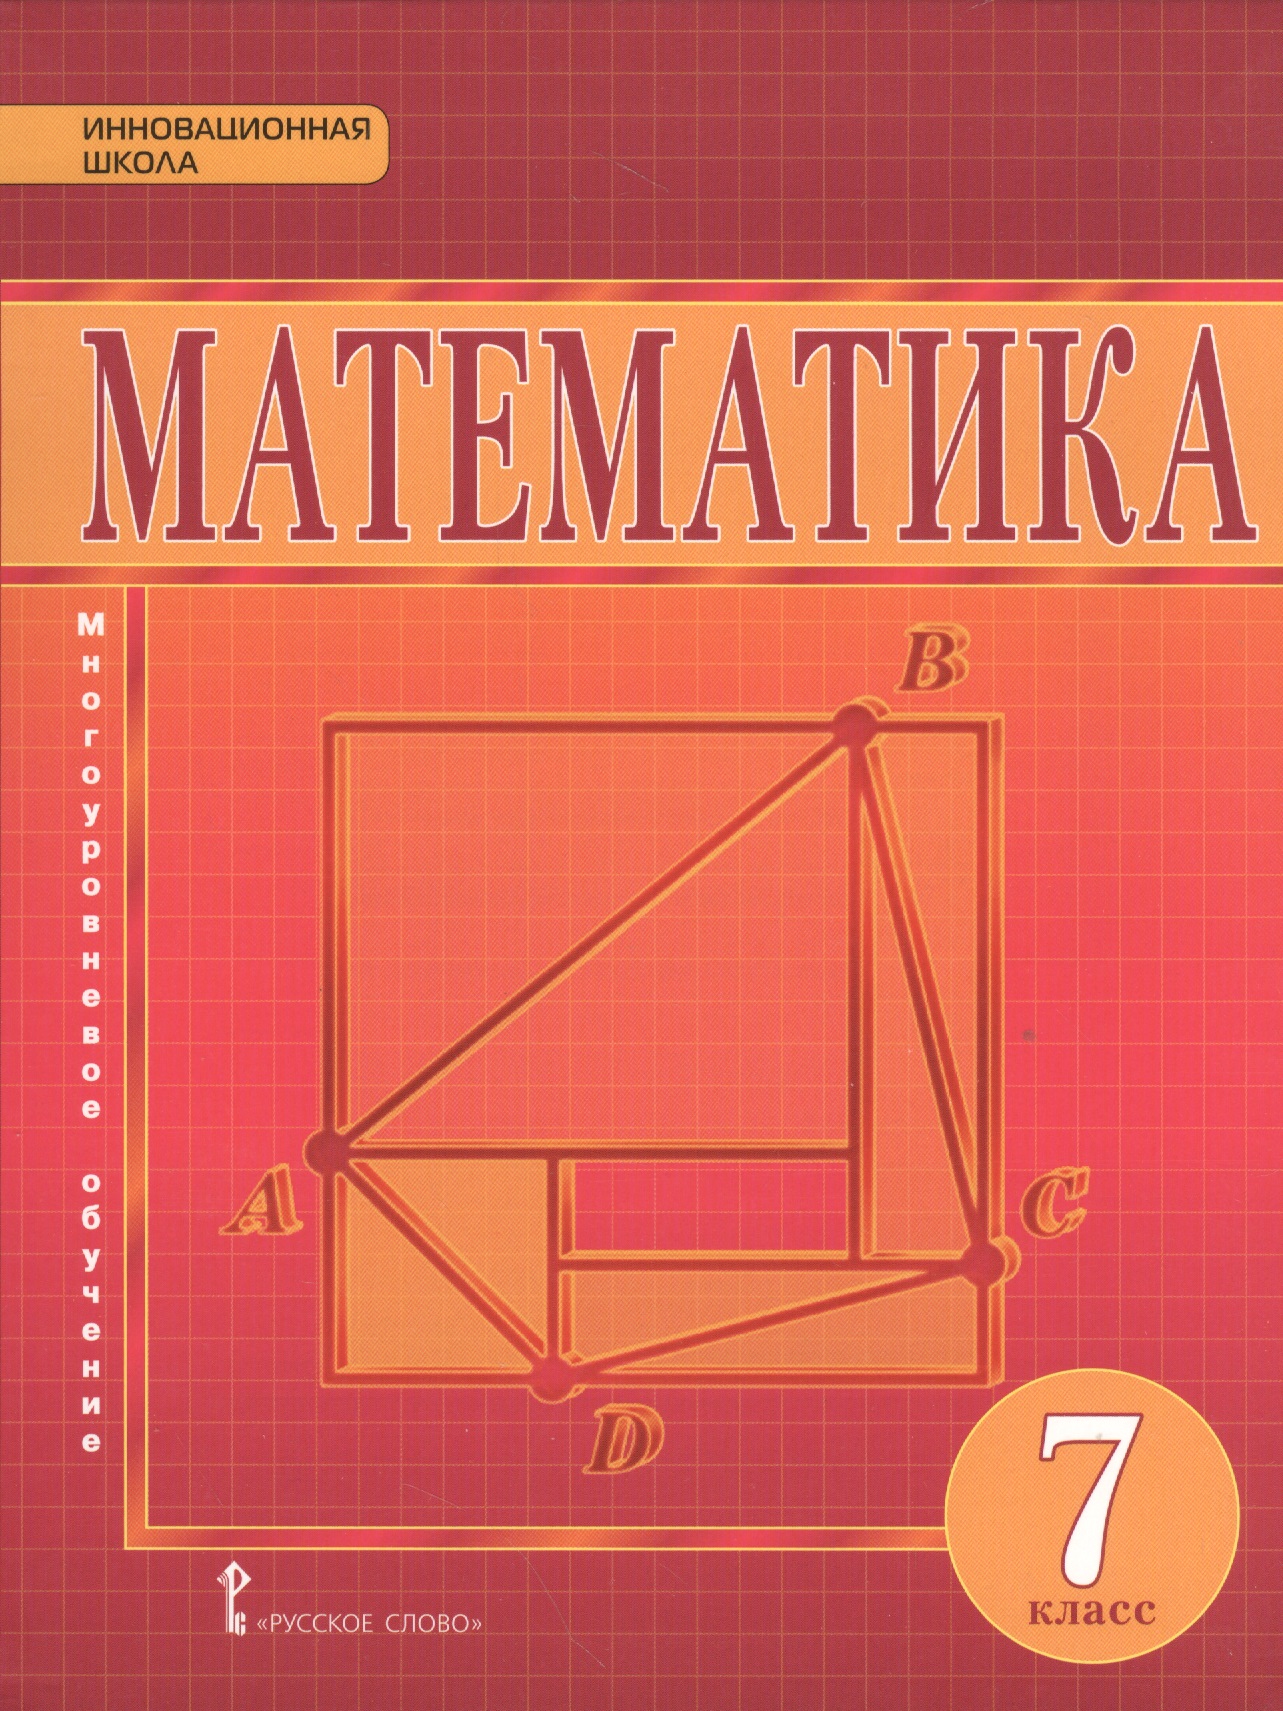 Матиматика учебник. Учебник математики 7 класс. Математика 7 класс учебник. Учебник математике 7 класс. Математика геометрия 7 кл..